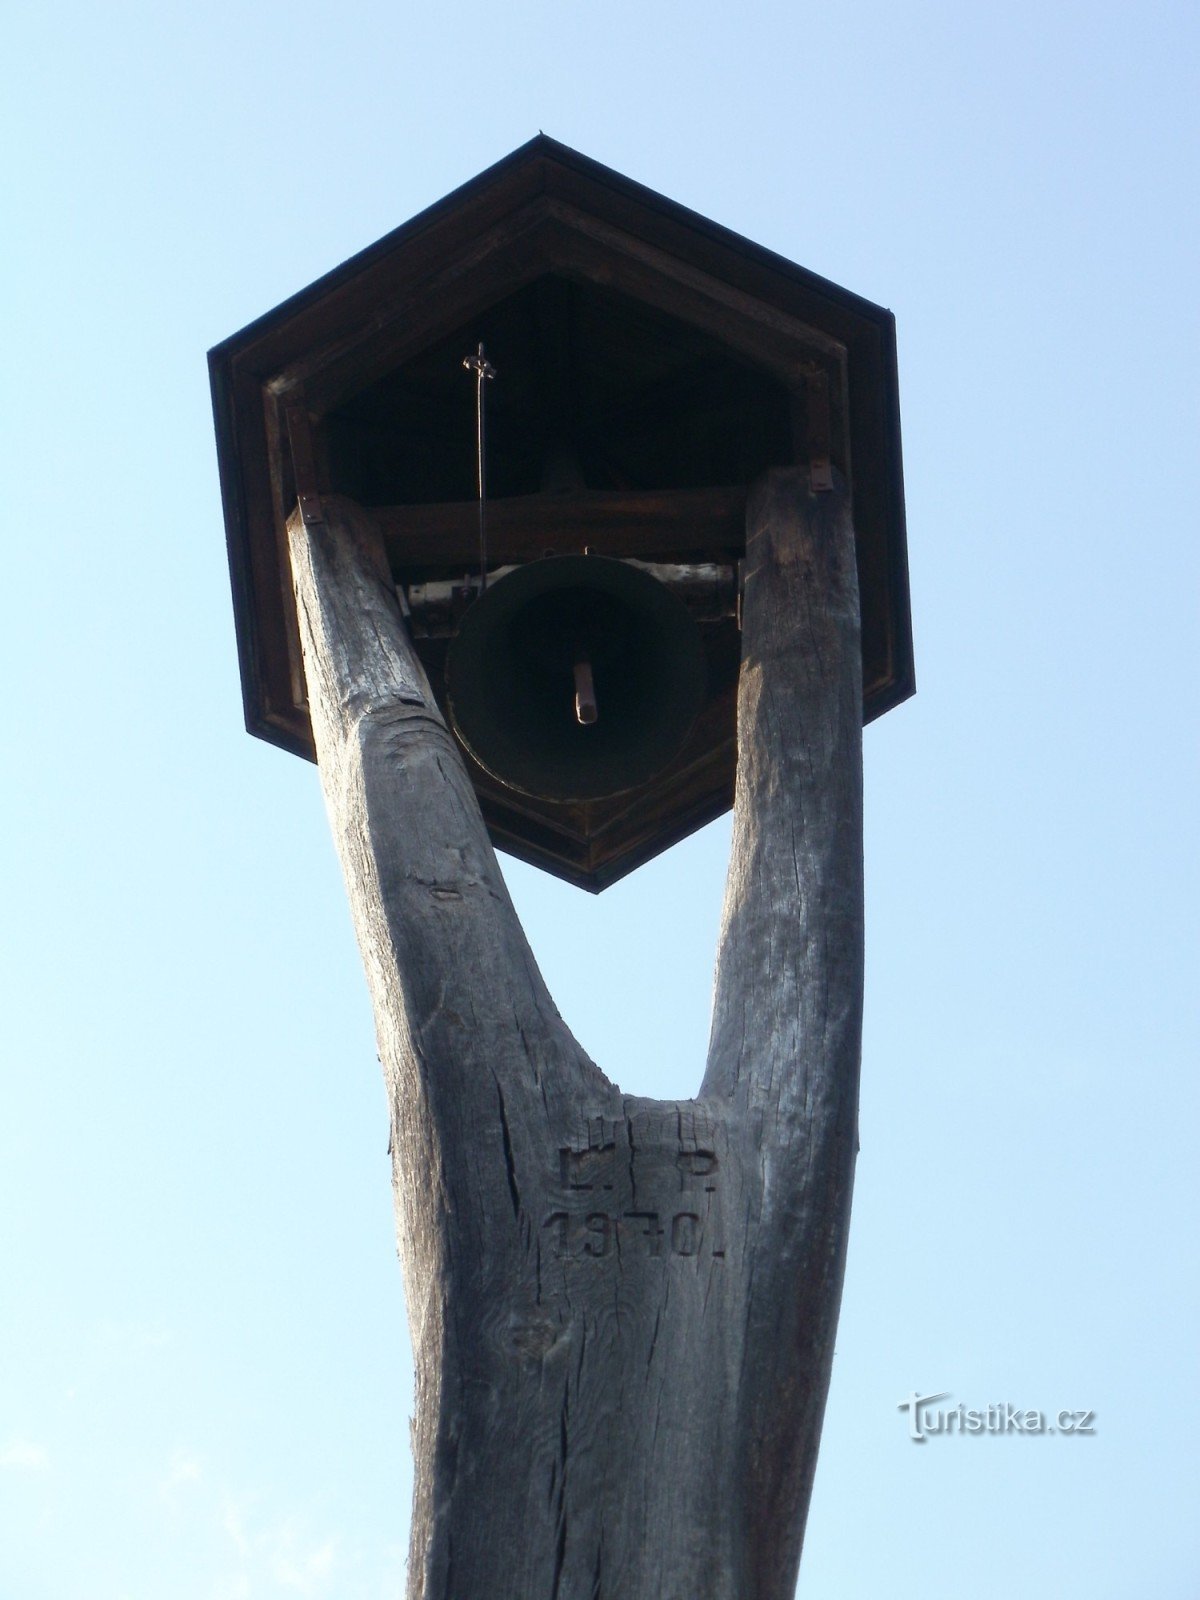 Hradec Králové - tháp chuông và đài kỷ niệm đóng đinh ở Věkošy